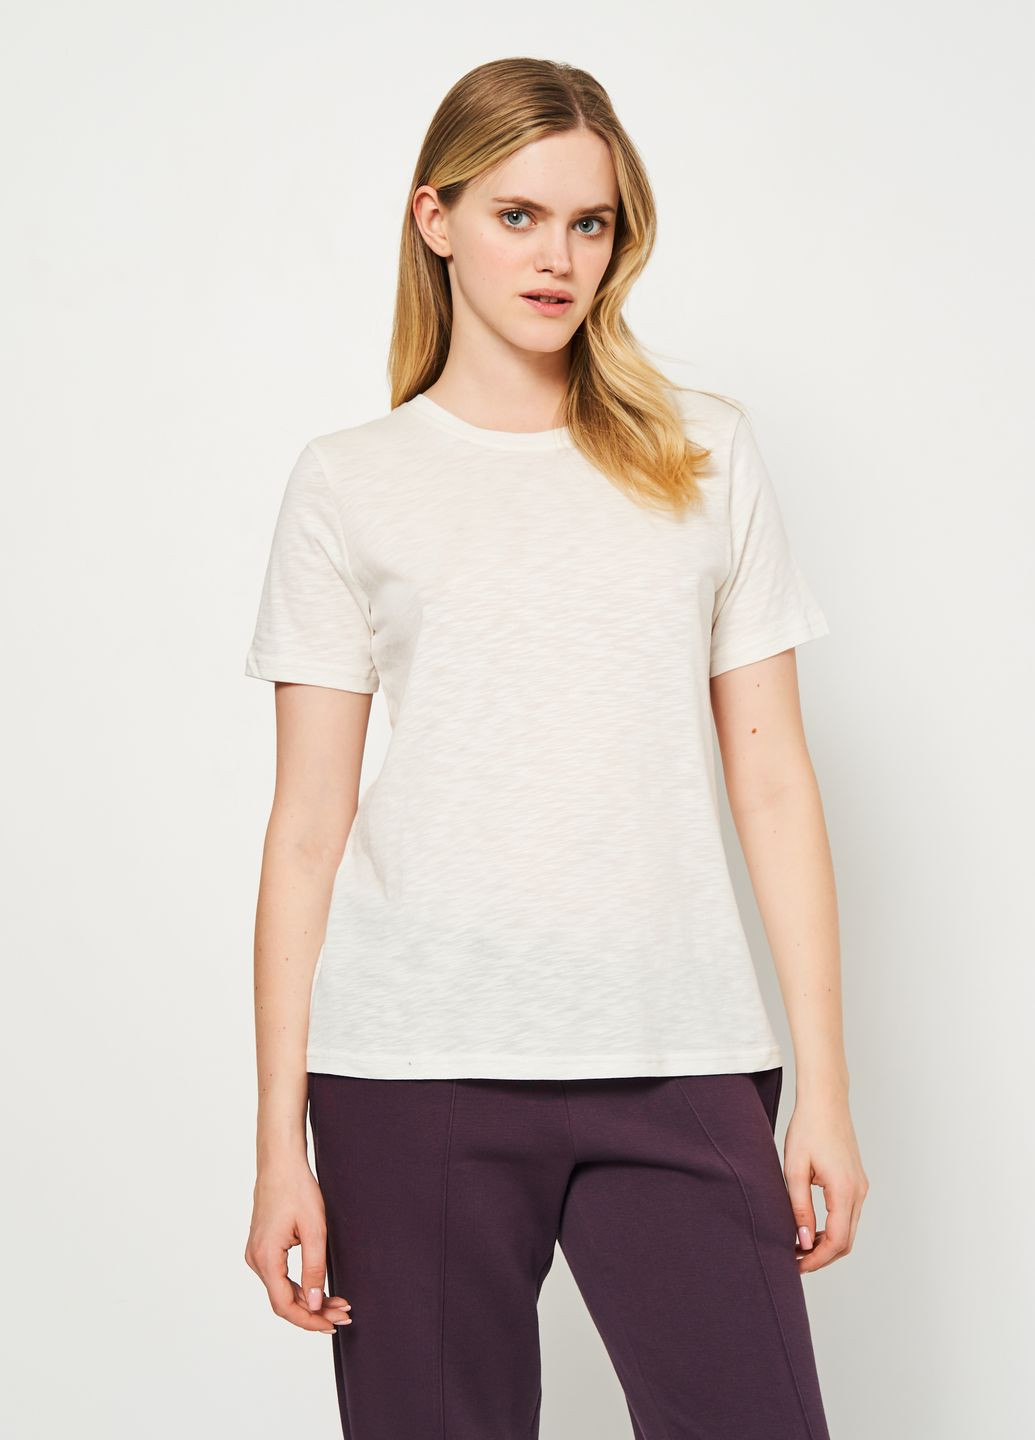 Молочная всесезон футболка женская вискозная с коротким рукавом Роза